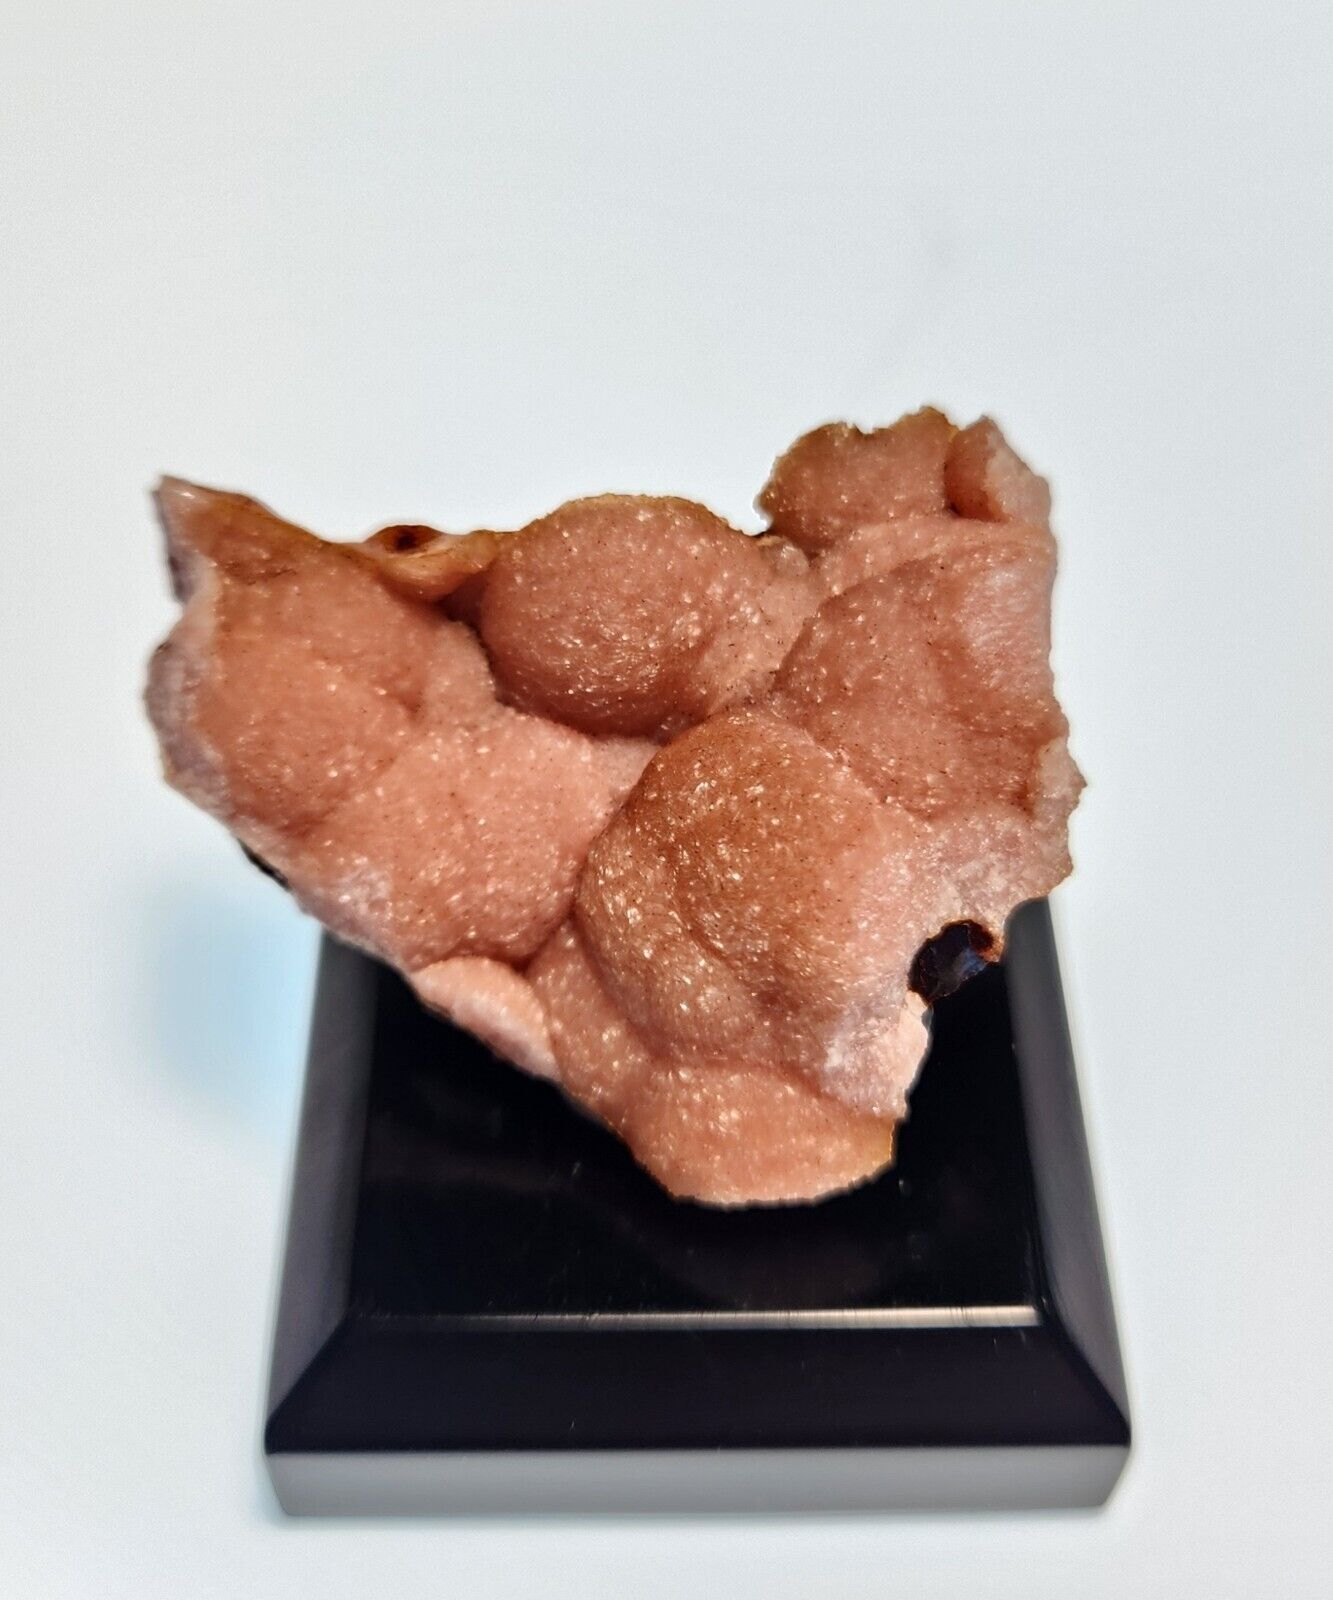 Pink Rhodochrosite Druzy Botryoidal Crystals on Hisingerite Matrix - Mexico